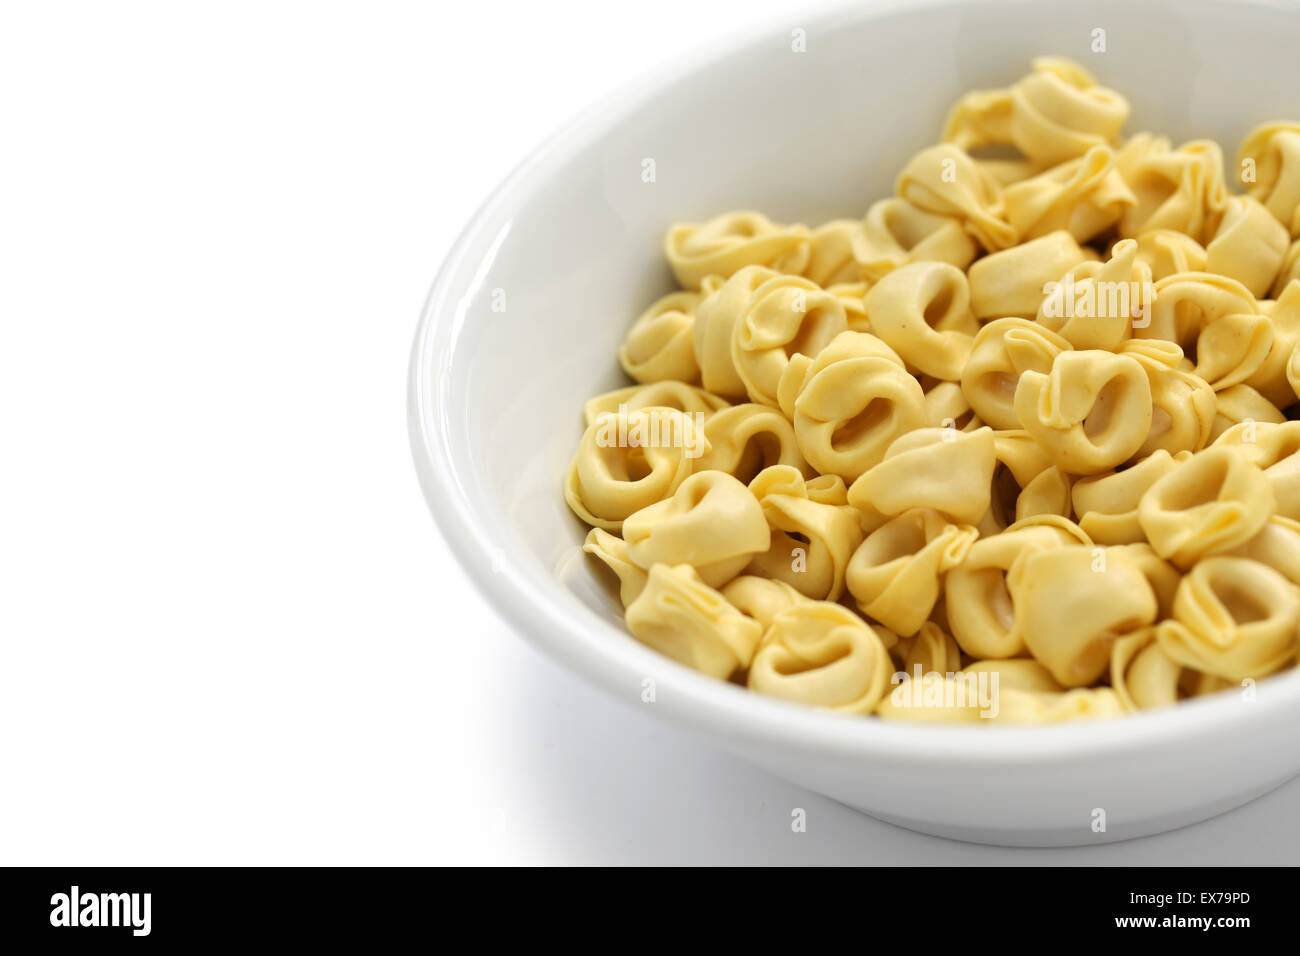 ungekocht Tortellini Nudeln in Schüssel isoliert auf weißem Hintergrund Stockfoto